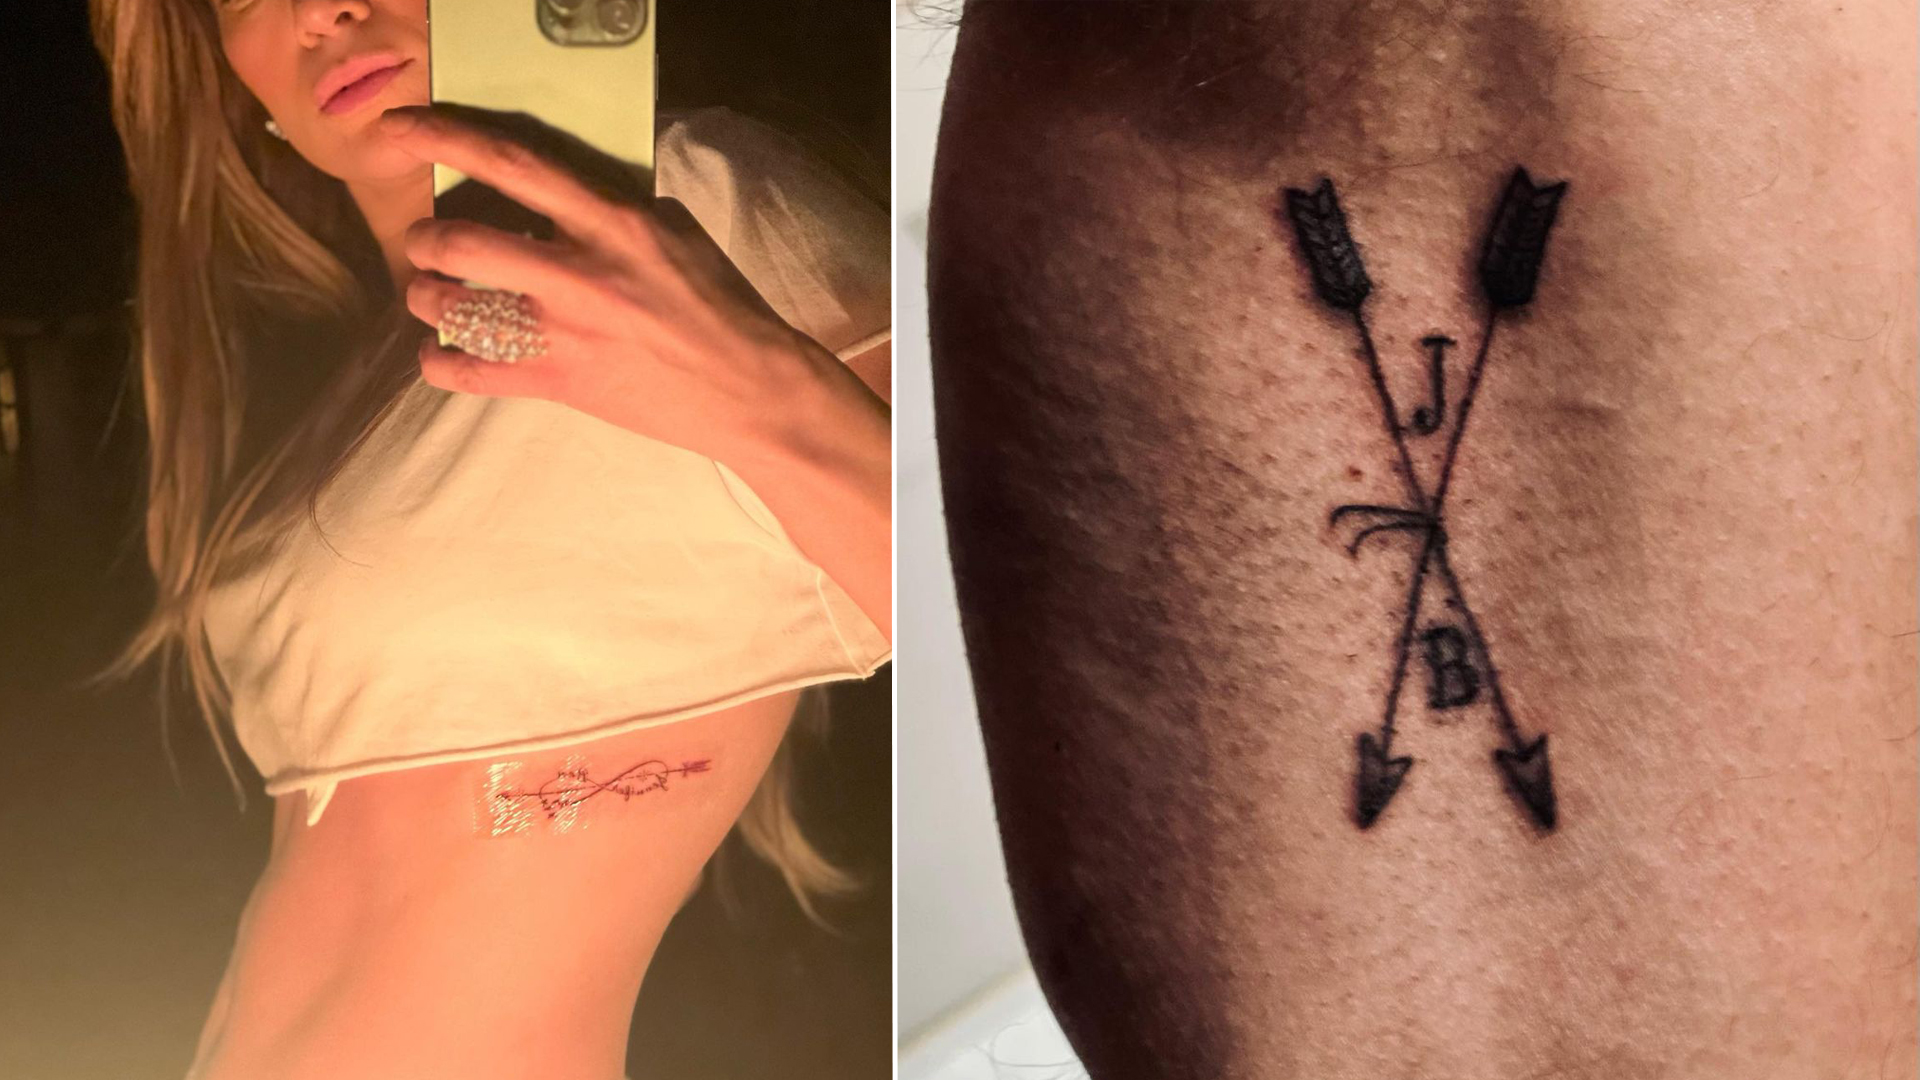 Дженнифер Лопес и Бен Аффлек сделали татуировки со своими именами ко Дню святого Валентина. Фото © Instagram (признан экстремистской организацией и запрещён на территории Российской Федерации) / jlo